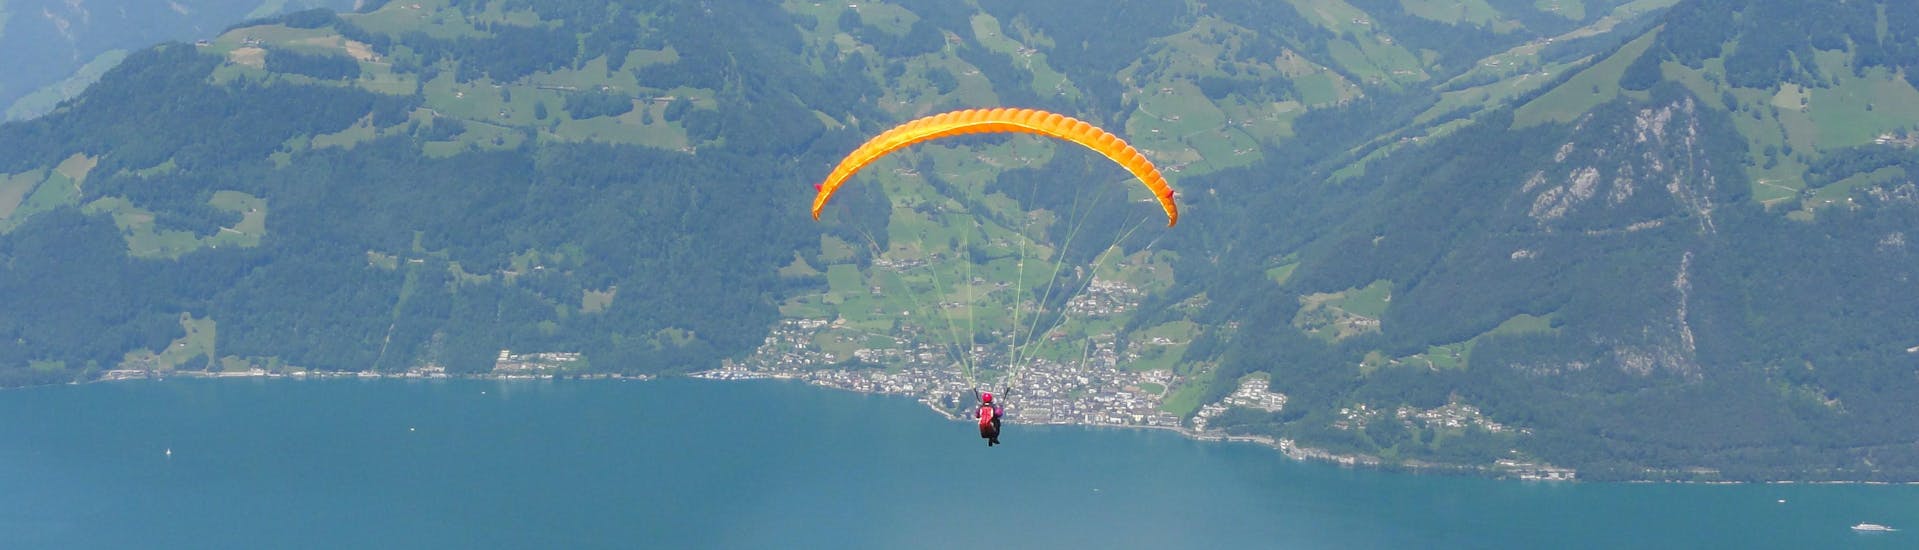 Emmetten-Luzern: Een tandemvlucht vindt plaats in een van de hotspots voor paragliding.